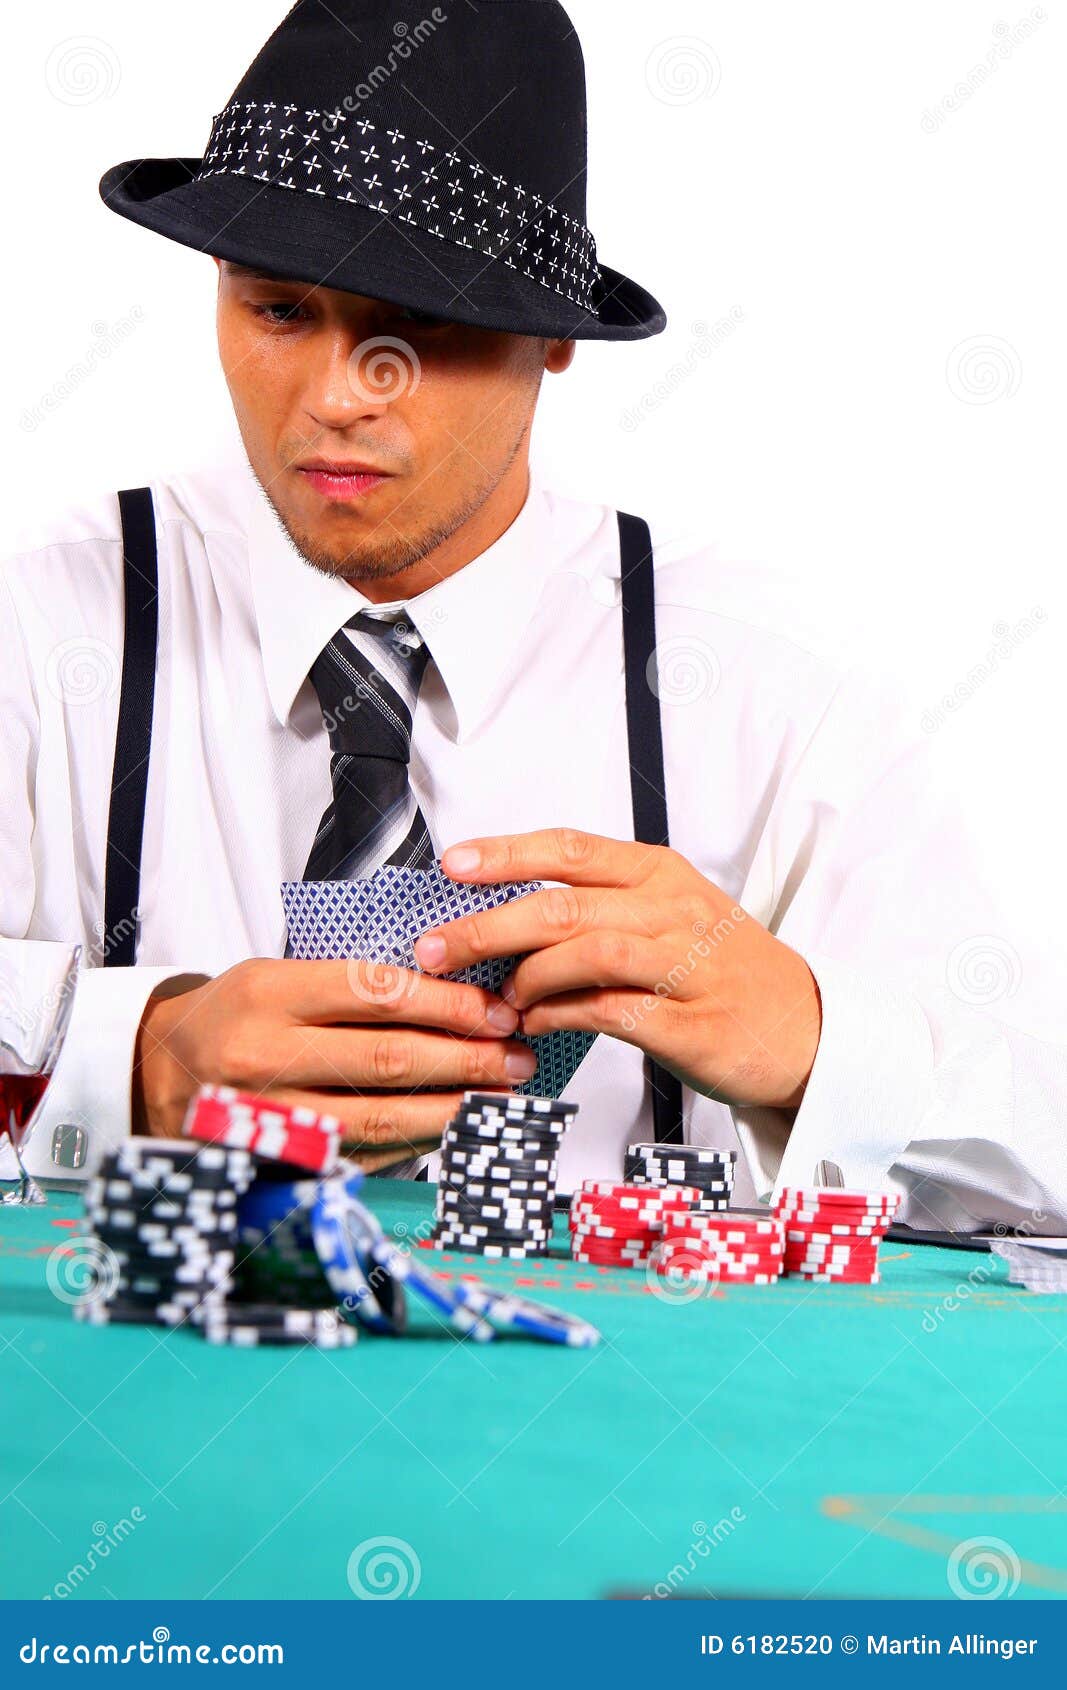 Póquer no estilo. Homem novo que joga o póquer com um chapéu e um terno à moda. Isolado sobre o fundo branco.